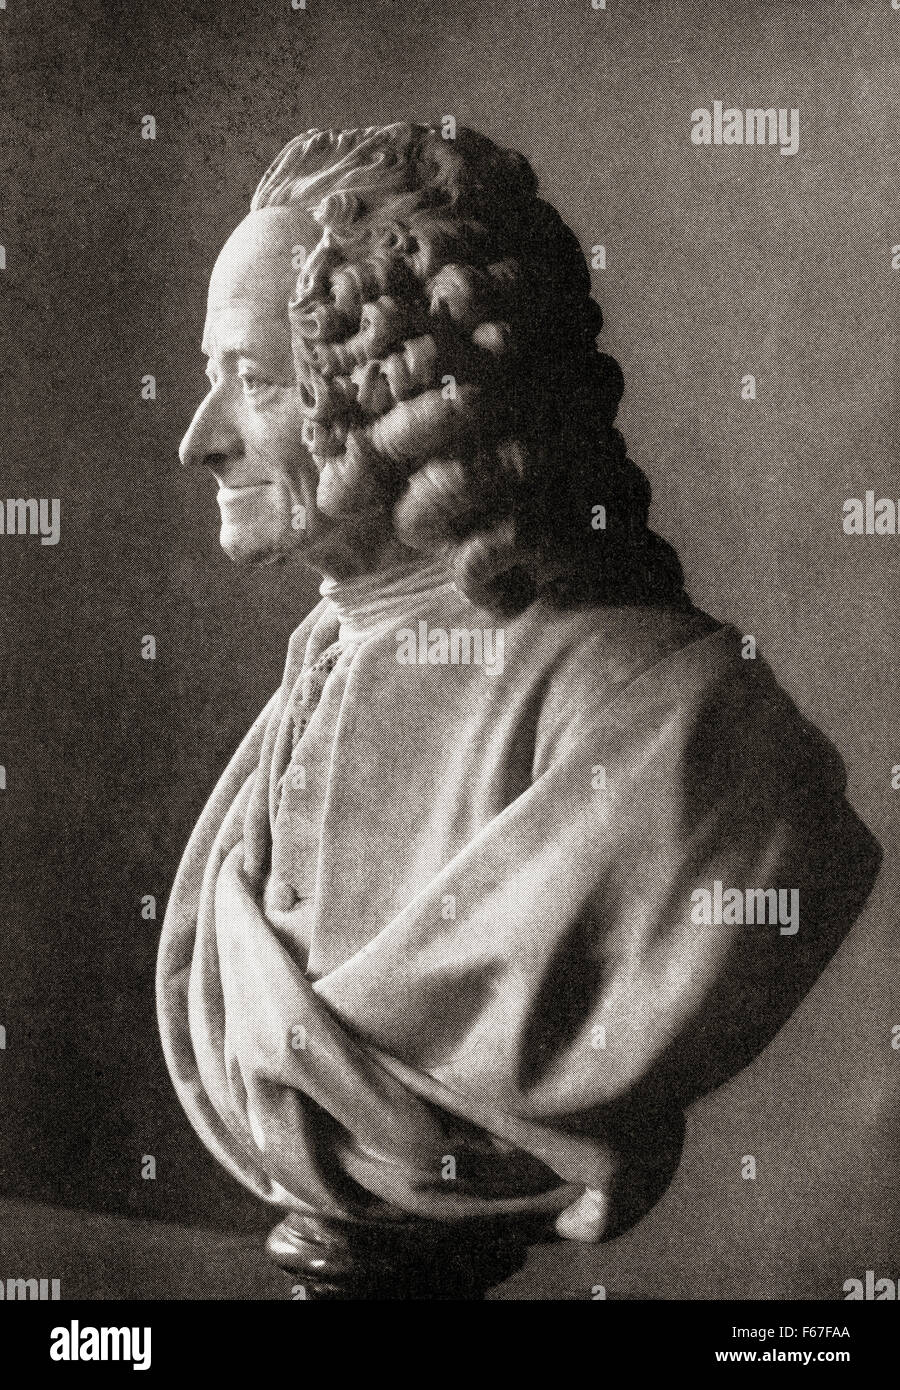 François-Marie Arouet, 1694-1778, bekannt durch seine Nom De Plume Voltaire.  Französischer Schriftsteller, Historiker und Philosoph Erleuchtung. Stockfoto